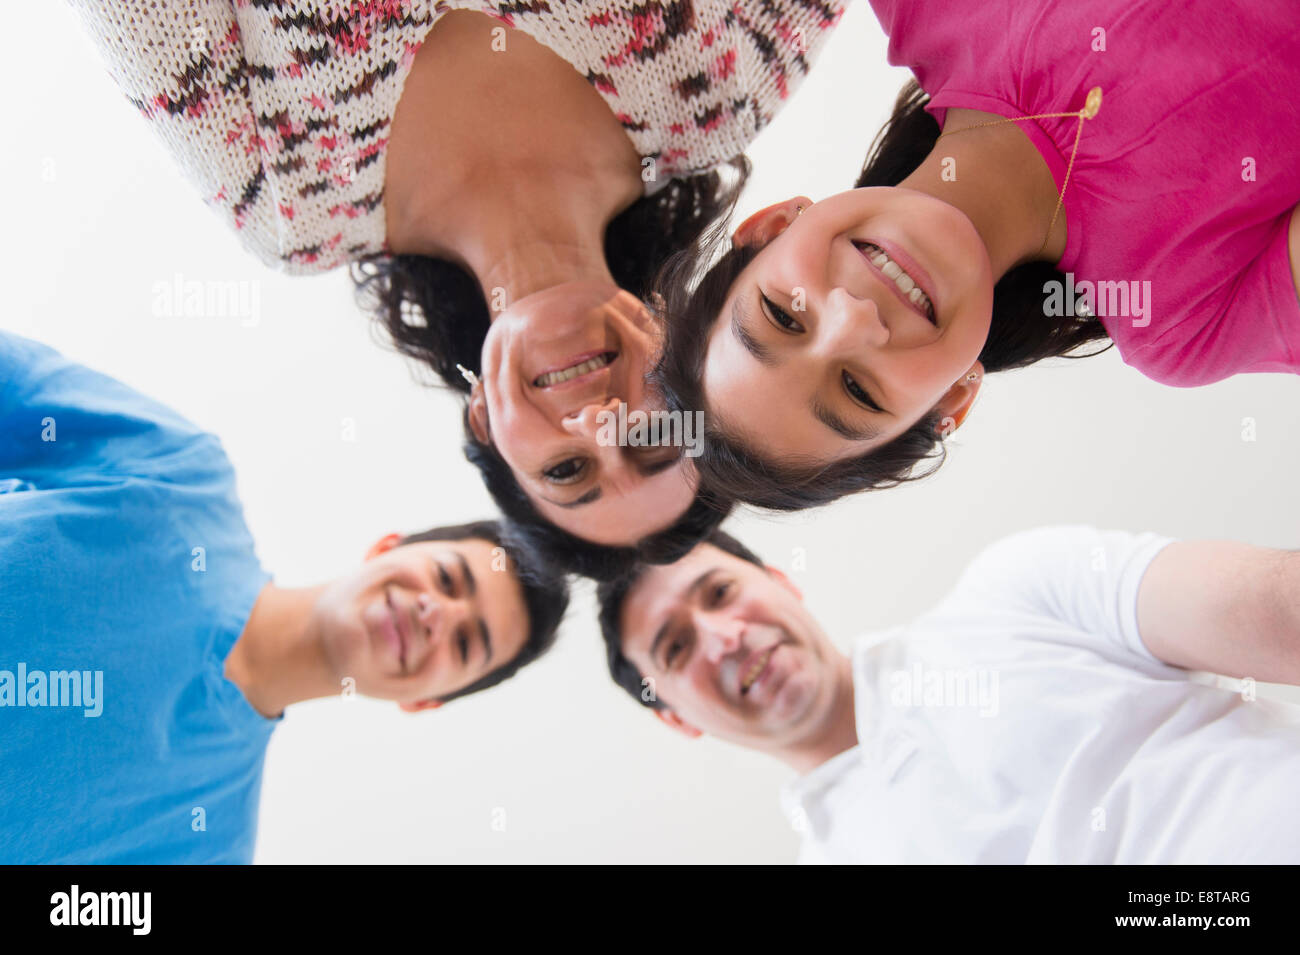 Basso angolo di visione della famiglia ispanica sorridente Foto Stock